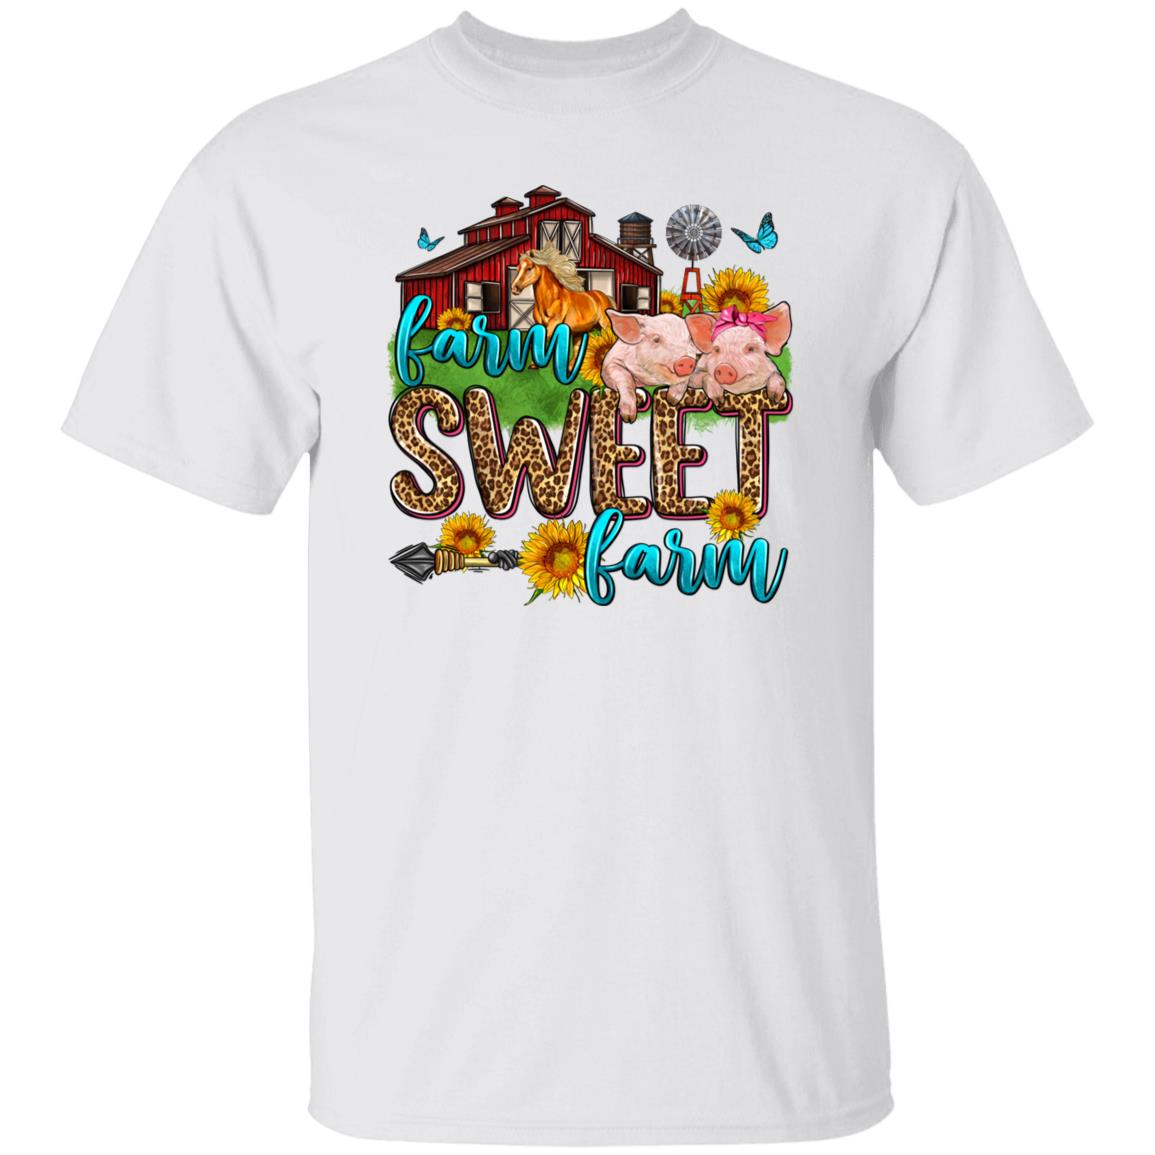 Farm sweet farm T-Shirt gift Country side farmer girl farm owner Unisex tee Sand White Sport Grey-Family-Gift-Planet